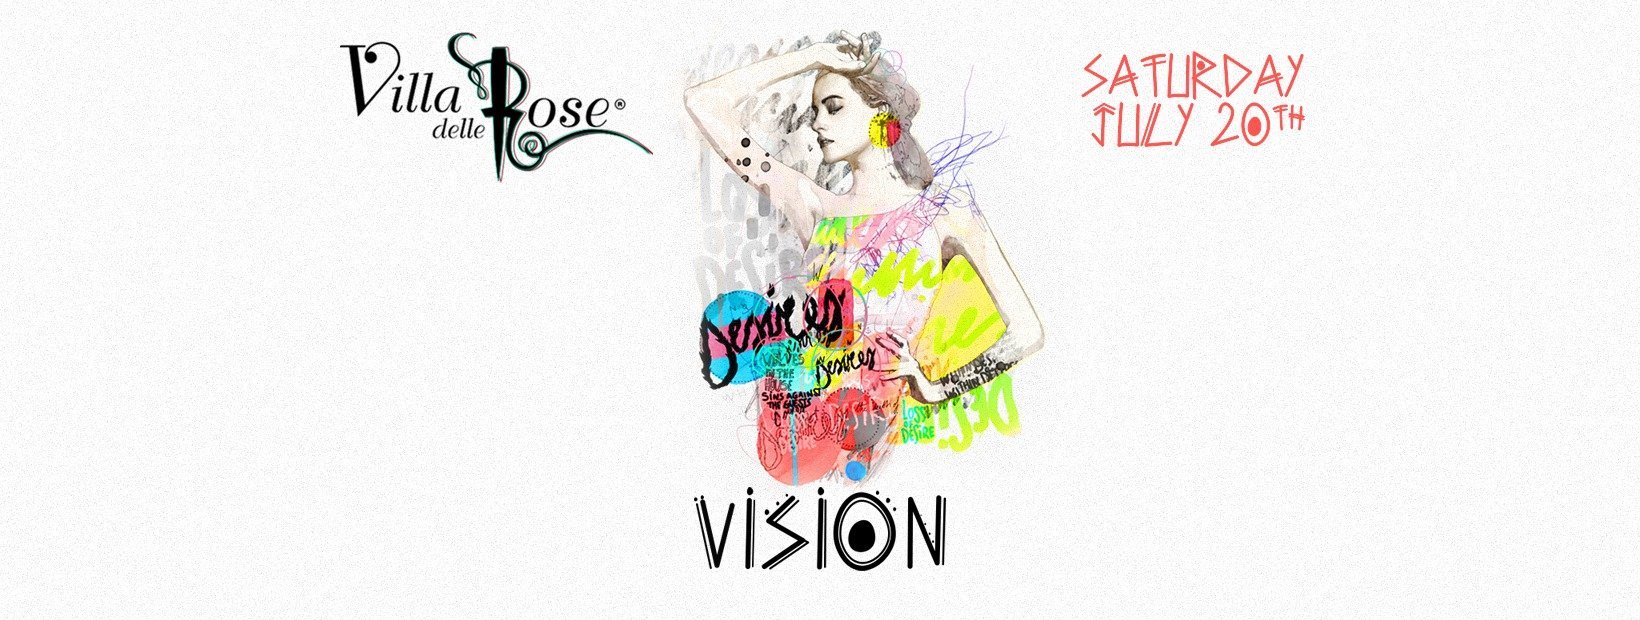 Villa Delle Rose 20 Luglio 2019